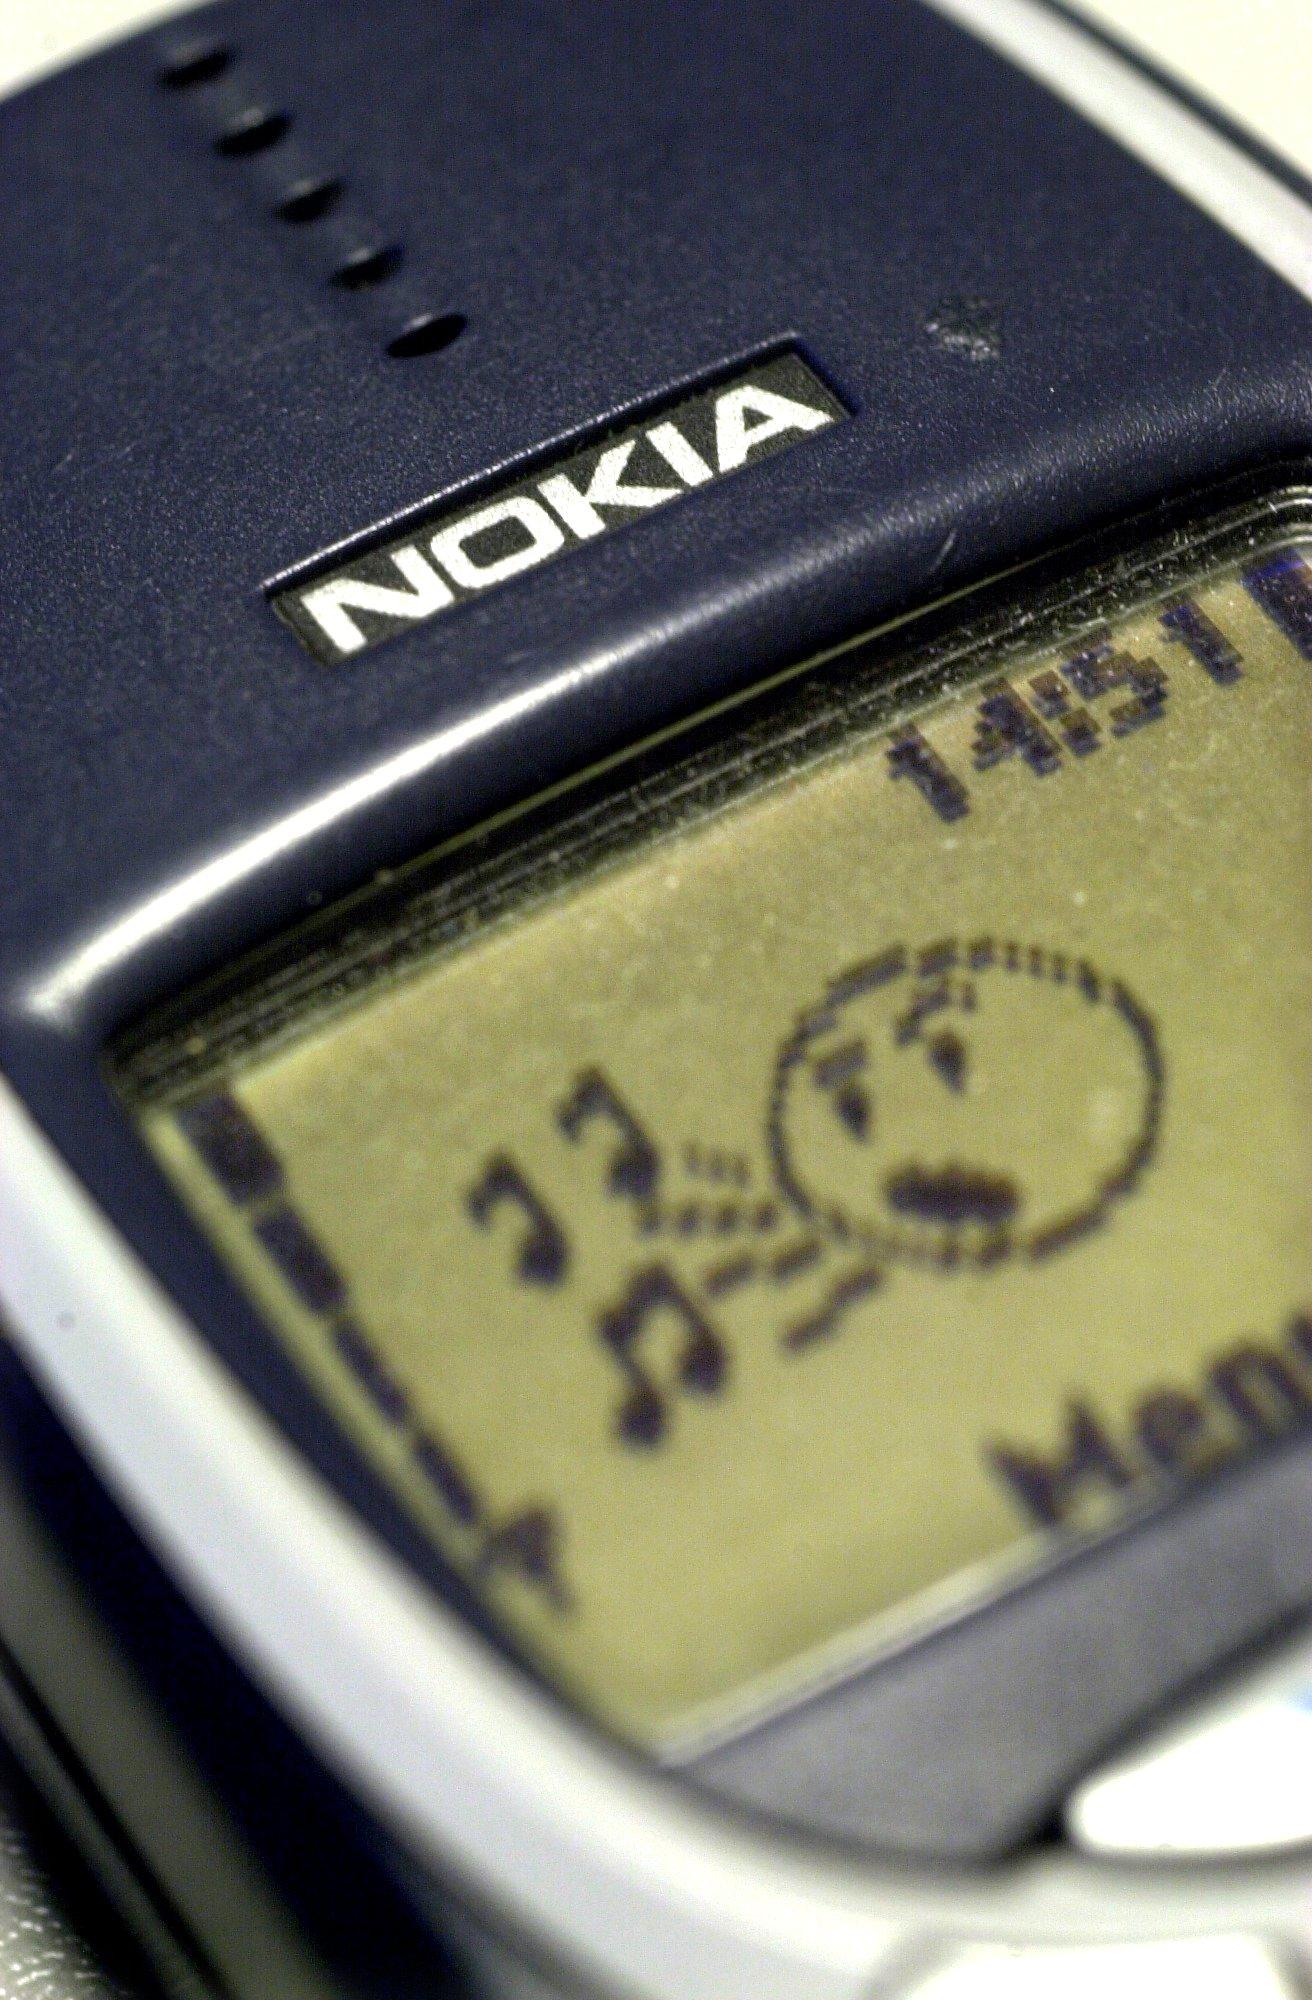 Mobiltelefonen Nokia 3310 som fick mobilanvändare över hela världen att börja spela "Snake", kom på första plats i 2004 års julförsäljning.